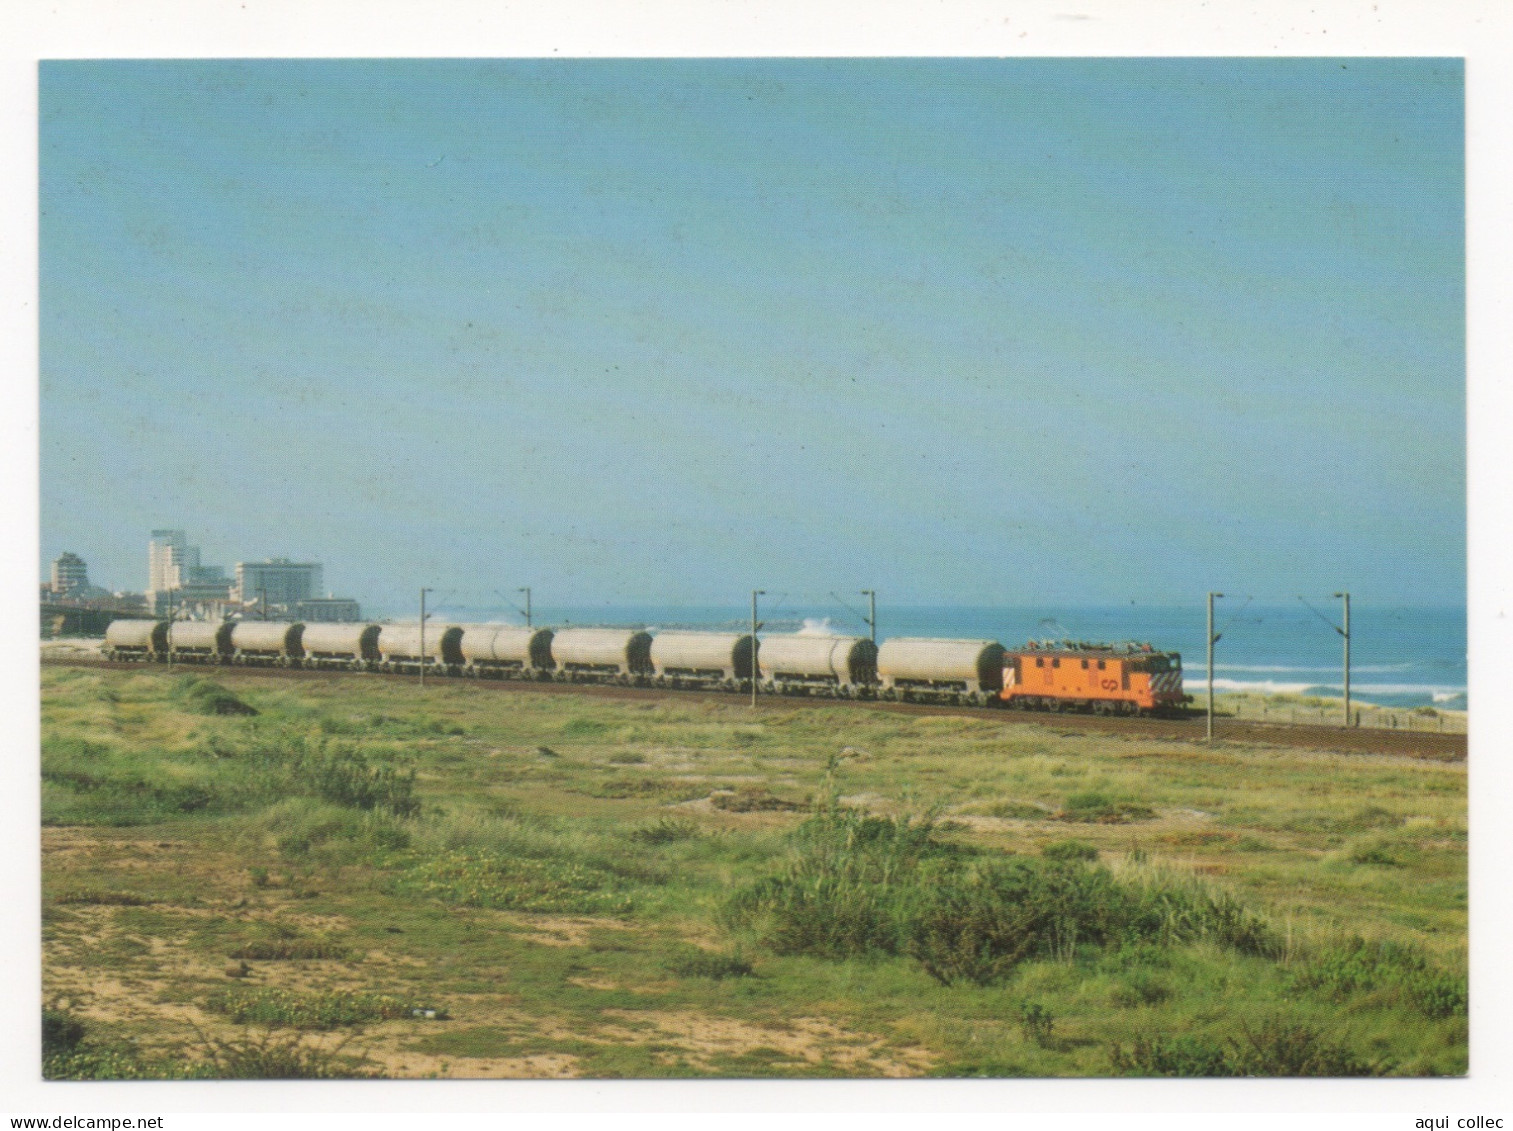 LOCOMOTIVE SÉRIE 2501/2515 REMORQUE UN TRAIN COMPLET DE CIMENT DE ALHANDRA À VILA NOVA DE GAIA - ESPINHO AVRIL 1987 - Trains